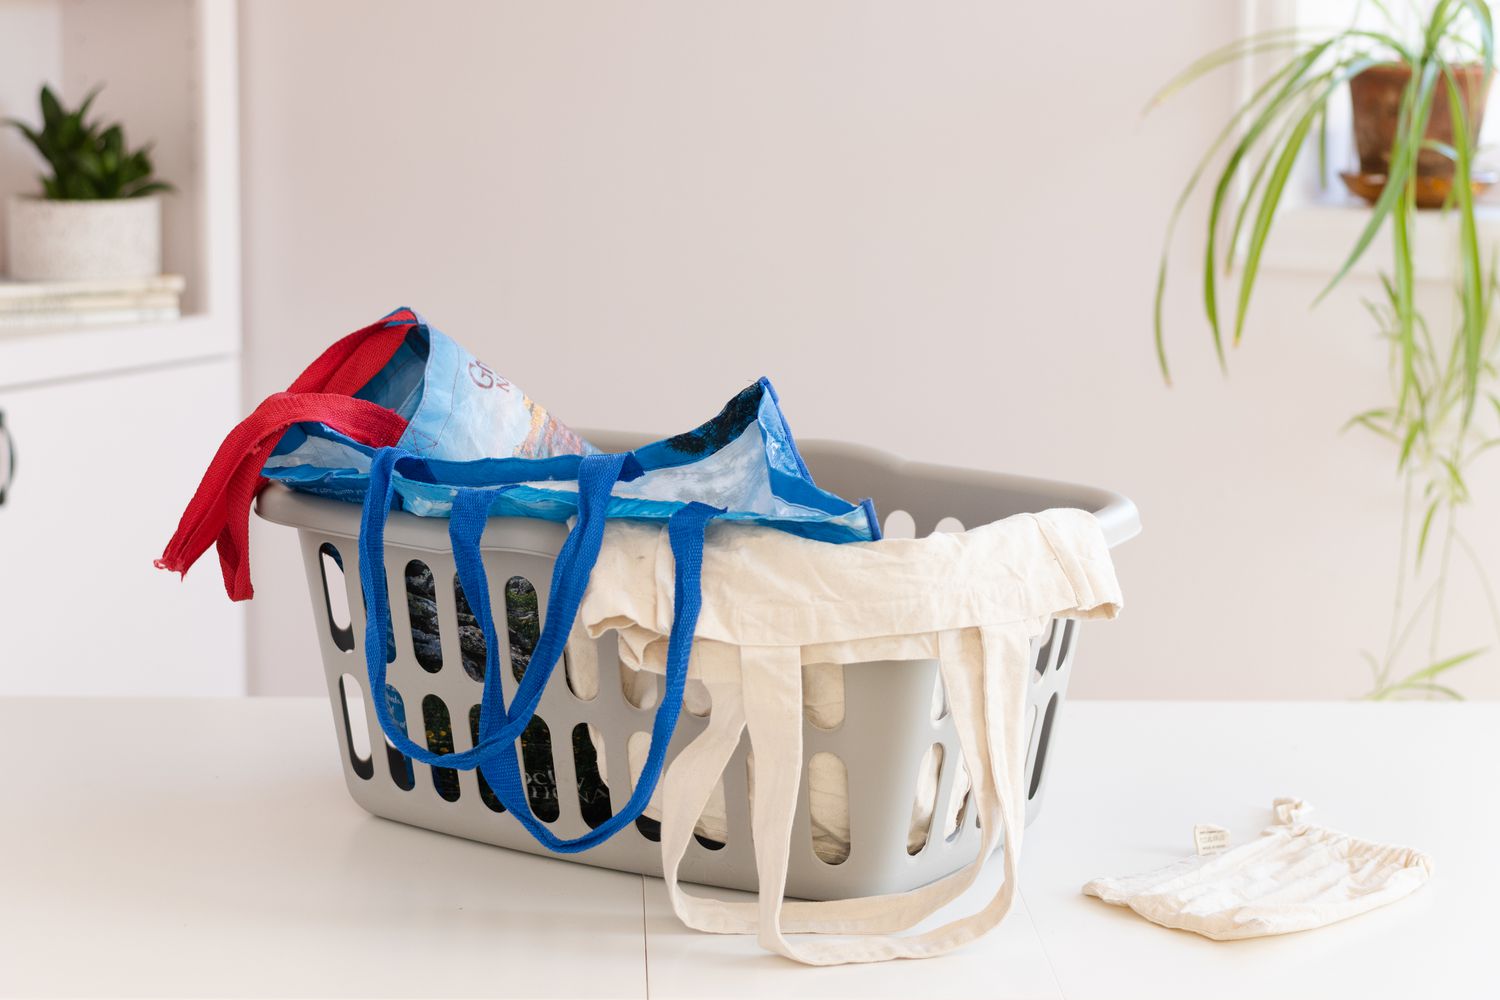 Sacolas reutilizáveis dentro do cesto de roupa suja